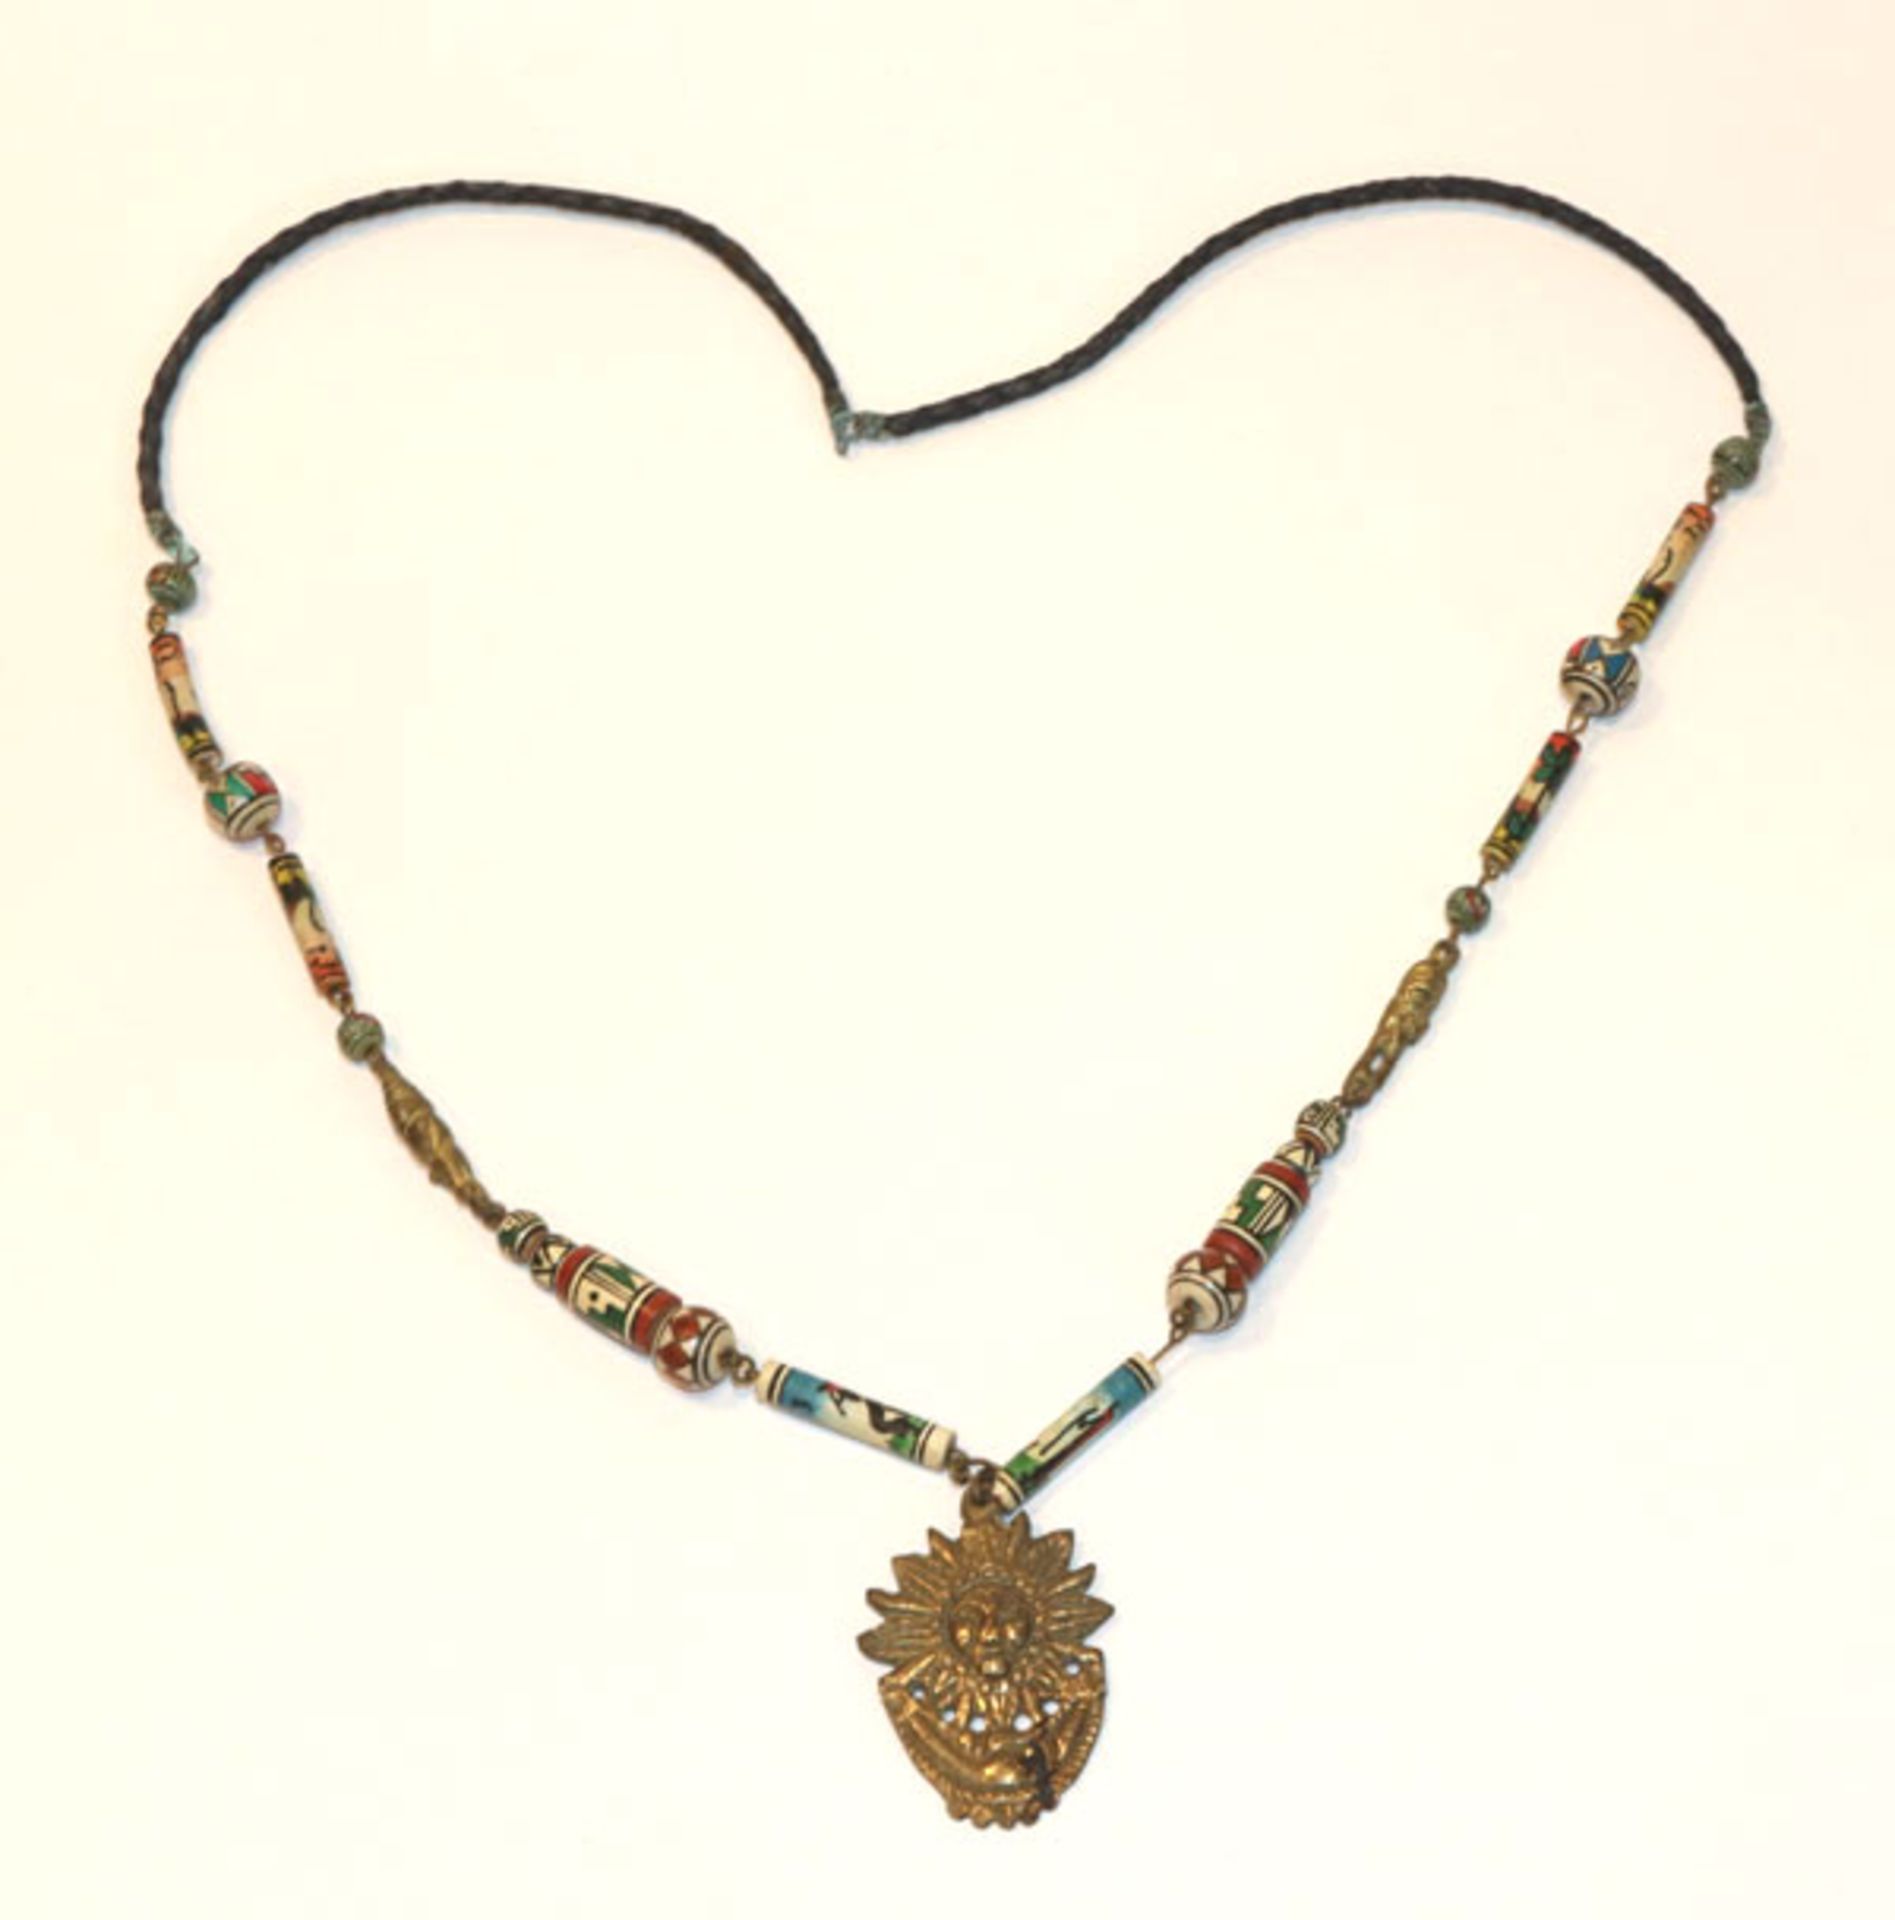 Südamerikanische Halskette mit Metall-Anhänger, L 64 cm, Tragespuren